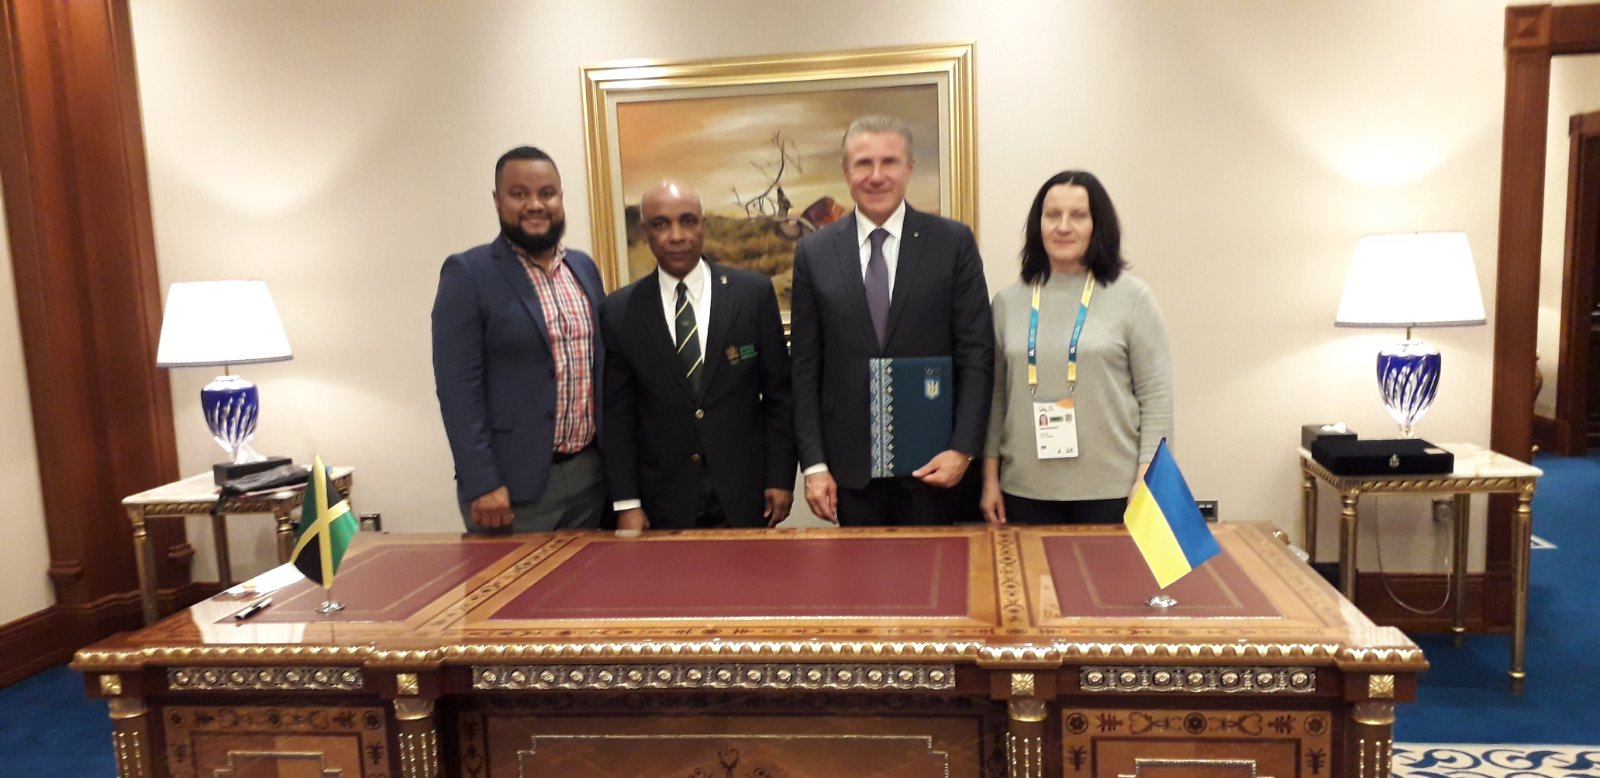 The NOCs of Ukraine and Jamaica signed a partnership agreement ©Twitter/Sergey Bubka